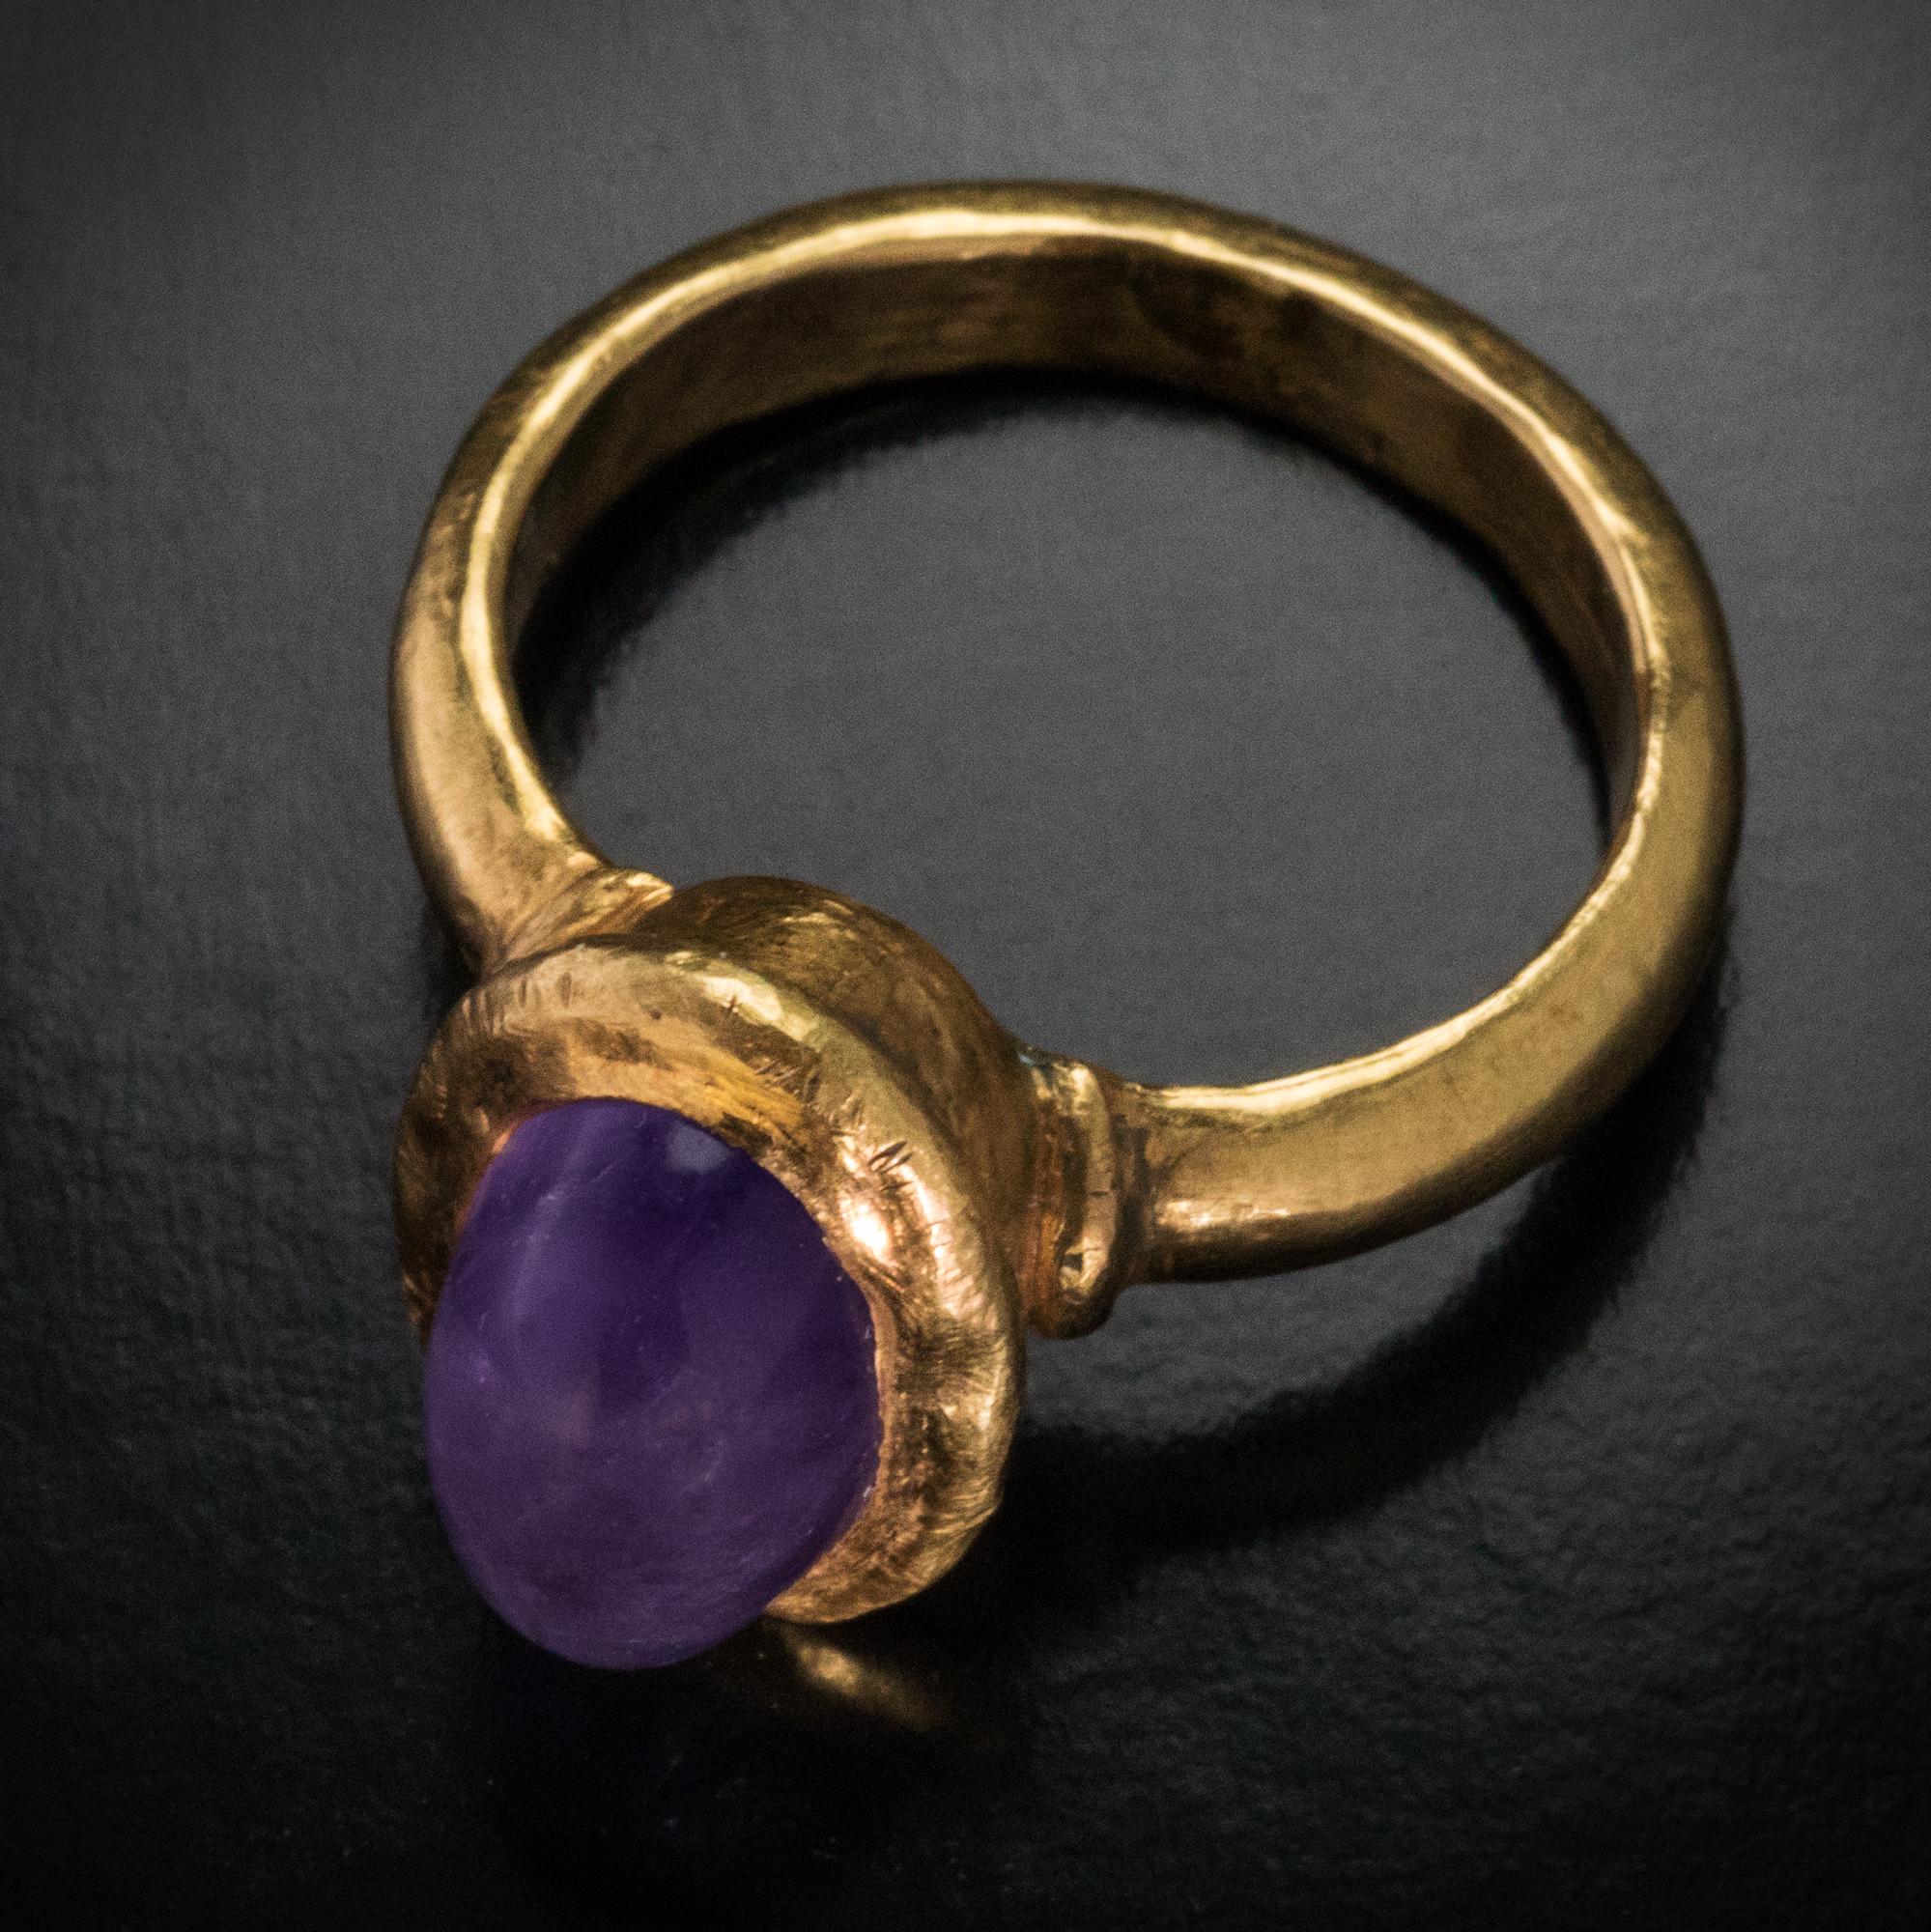 Empire byzantin, vers le 6e siècle après J.-C.
L'anneau creux en or est orné d'une améthyste ovale taillée en cabochon.
L'améthyste mesure 12,38 x 7,55 mm. La taille de la lunette est de 15 x 11 mm (5/8 x 7/16 in.)
La hauteur de la monture et de